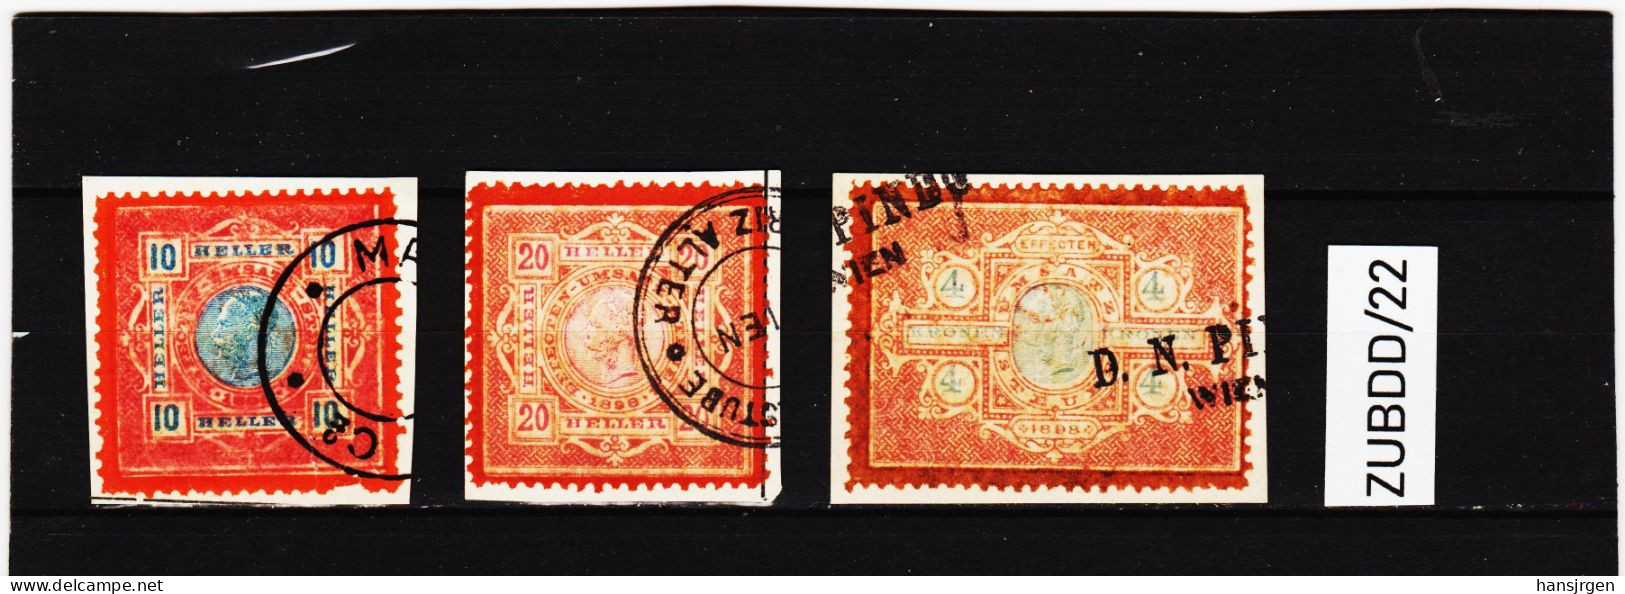 ZUBDD/22STEMPELMARKEN FISKALMARKEN EFECTEN-UMSATZSTEUER 1898 10+20 HELLER + 4 Kronen Gestempelt SIEHE ABBILDUNG - Revenue Stamps